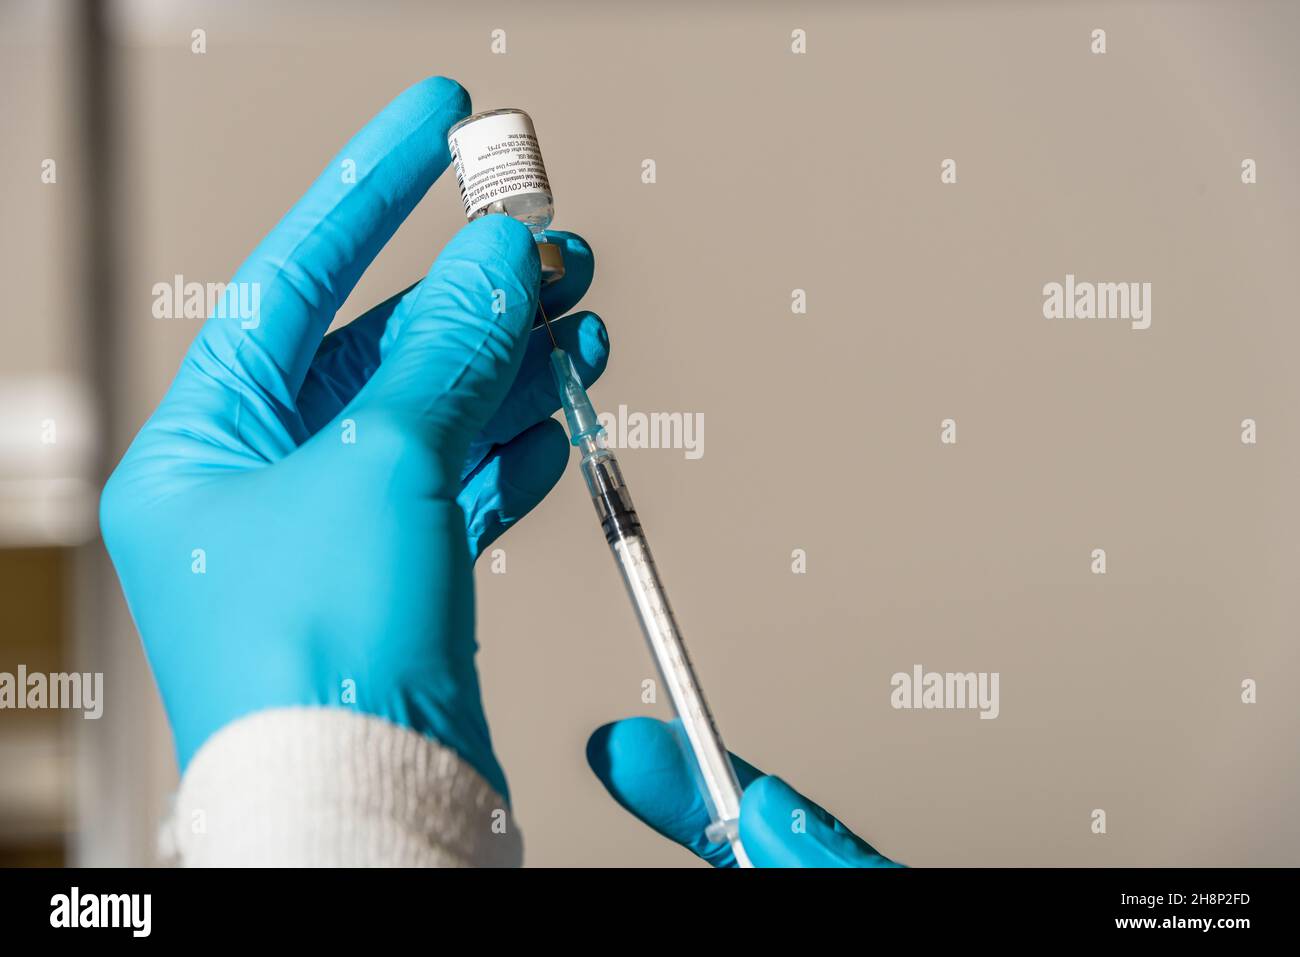 Aufziehen einer Impfdosis in eine Impfspritze zur Vorbereitung auf den Impfvorgang Stock Photo